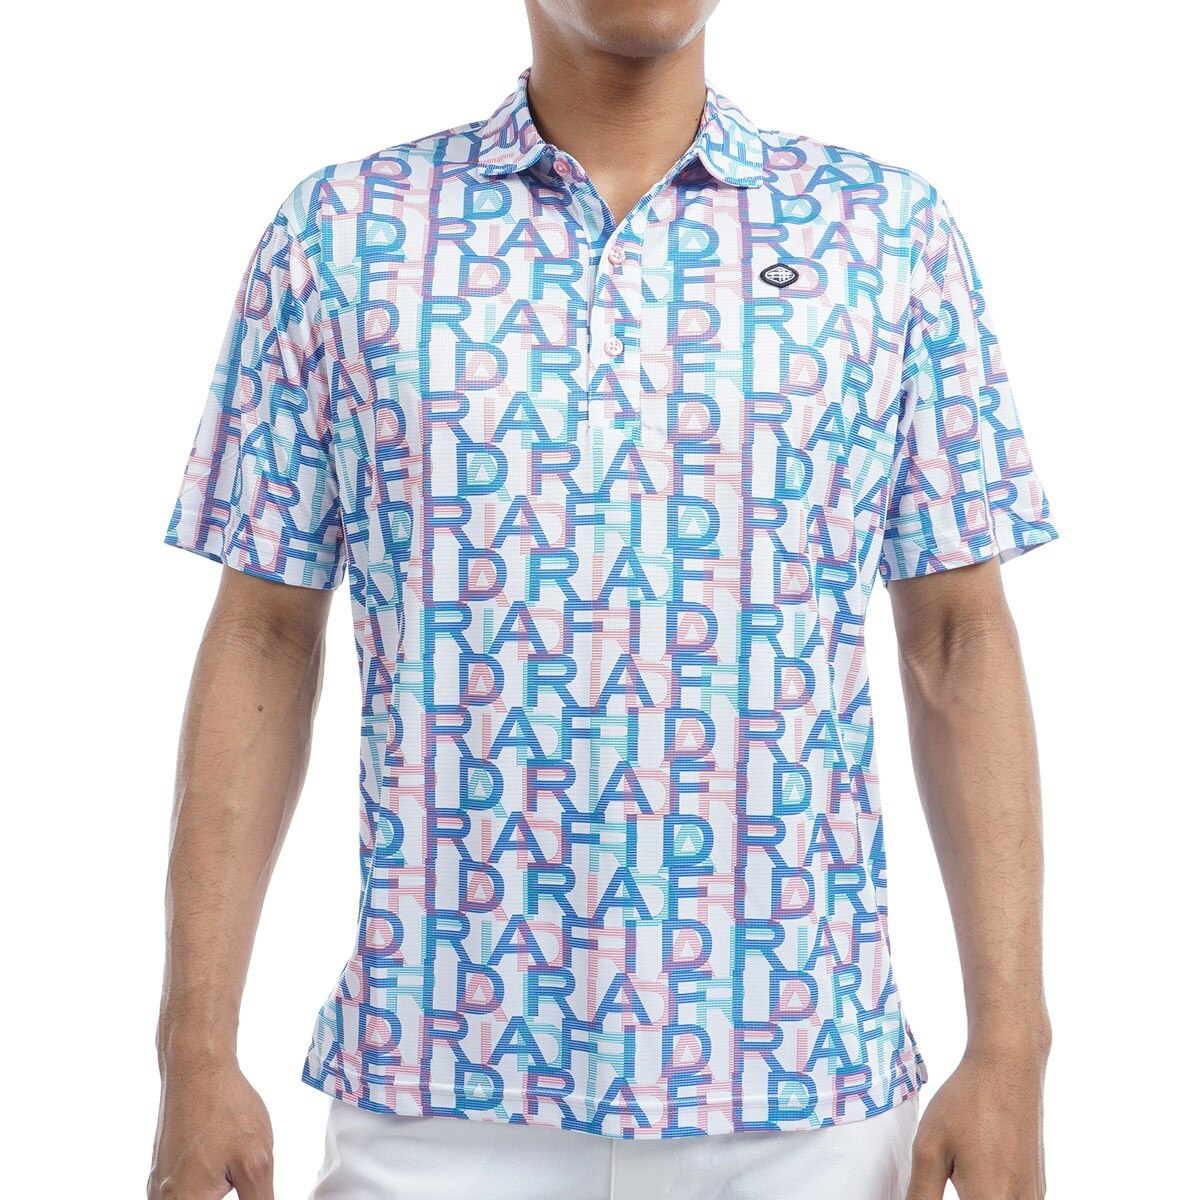 フィドラ(FIDRA) ポロシャツ 通販｜GDOゴルフショップ